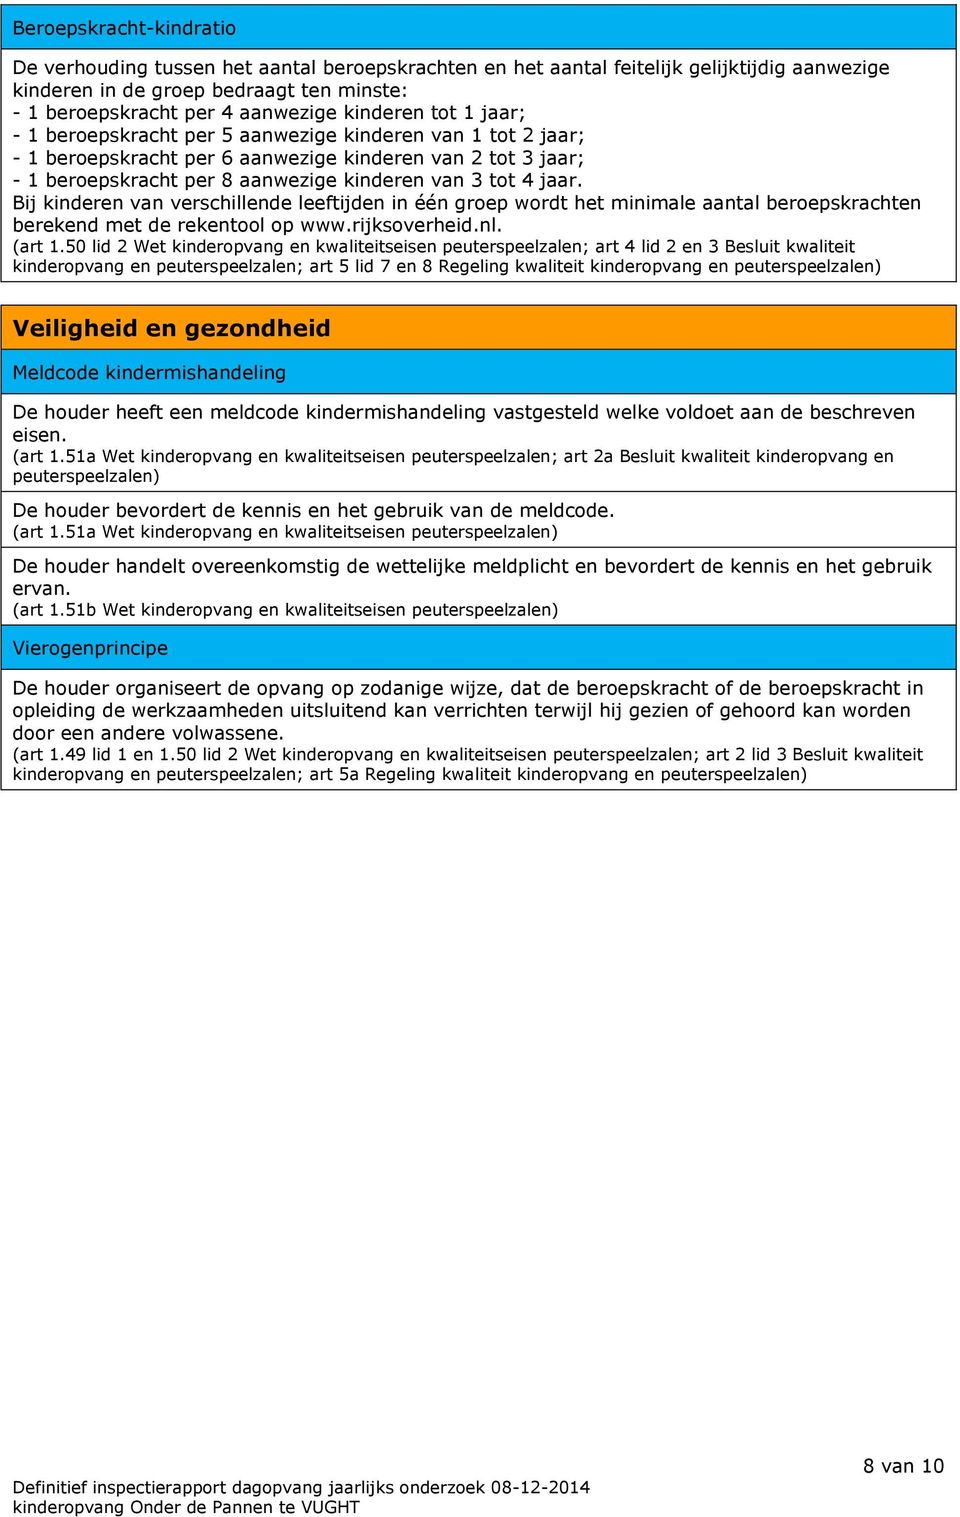 jaar. Bij kinderen van verschillende leeftijden in één groep wordt het minimale aantal beroepskrachten berekend met de rekentool op www.rijksoverheid.nl. (art 1.